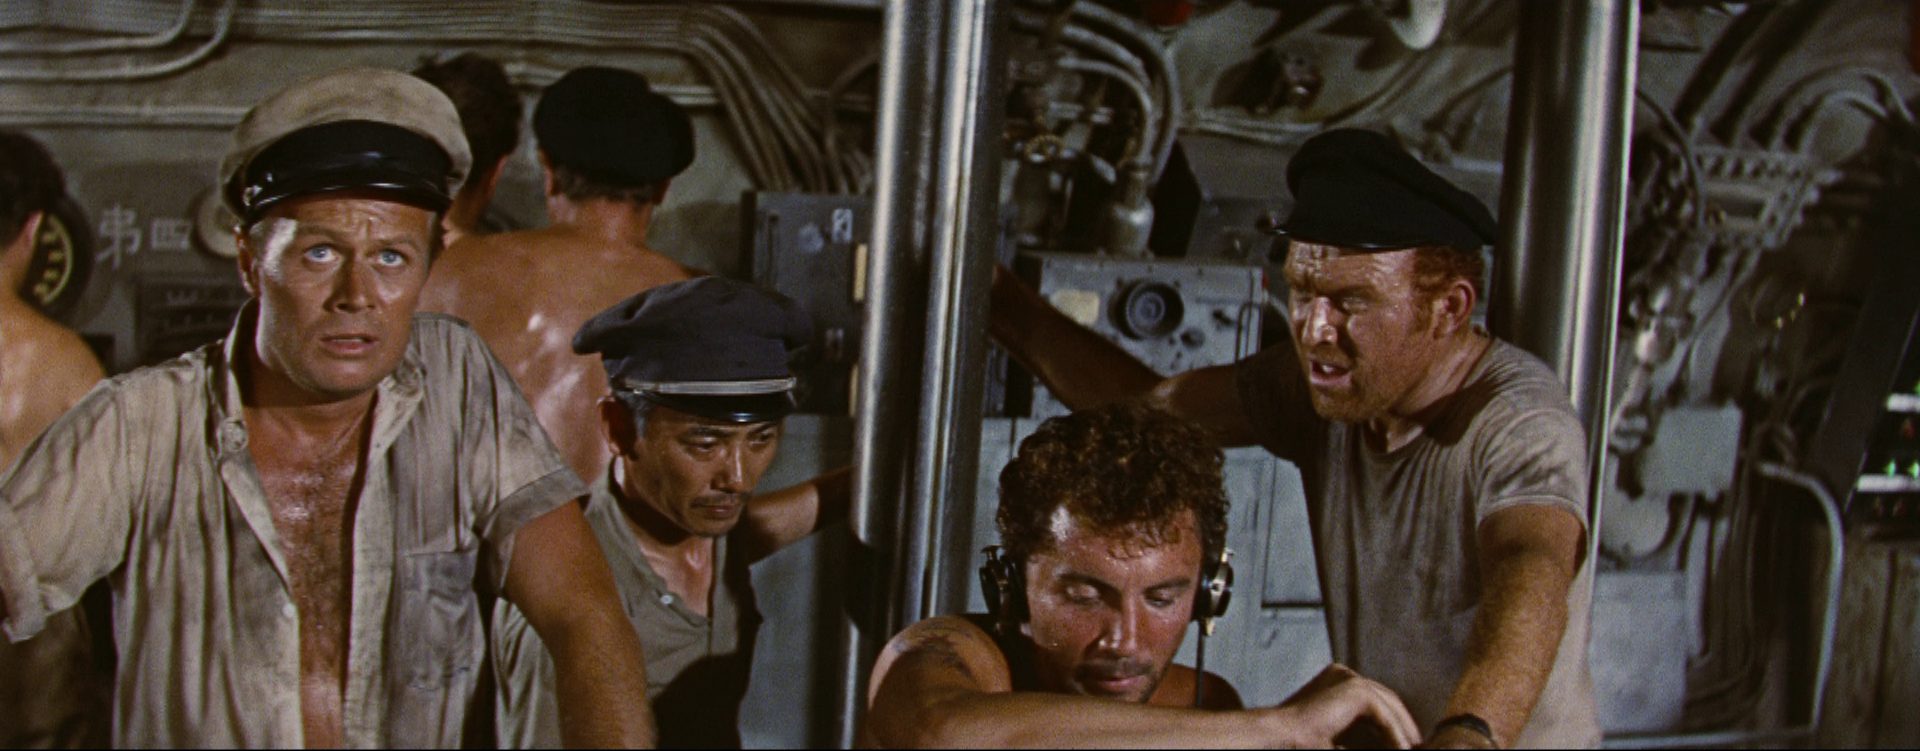 Richard Widmark als Kommandant im Beisein einiger Besatzungsmitglieder in verschwitzter Atmosphäre im U-Boot.